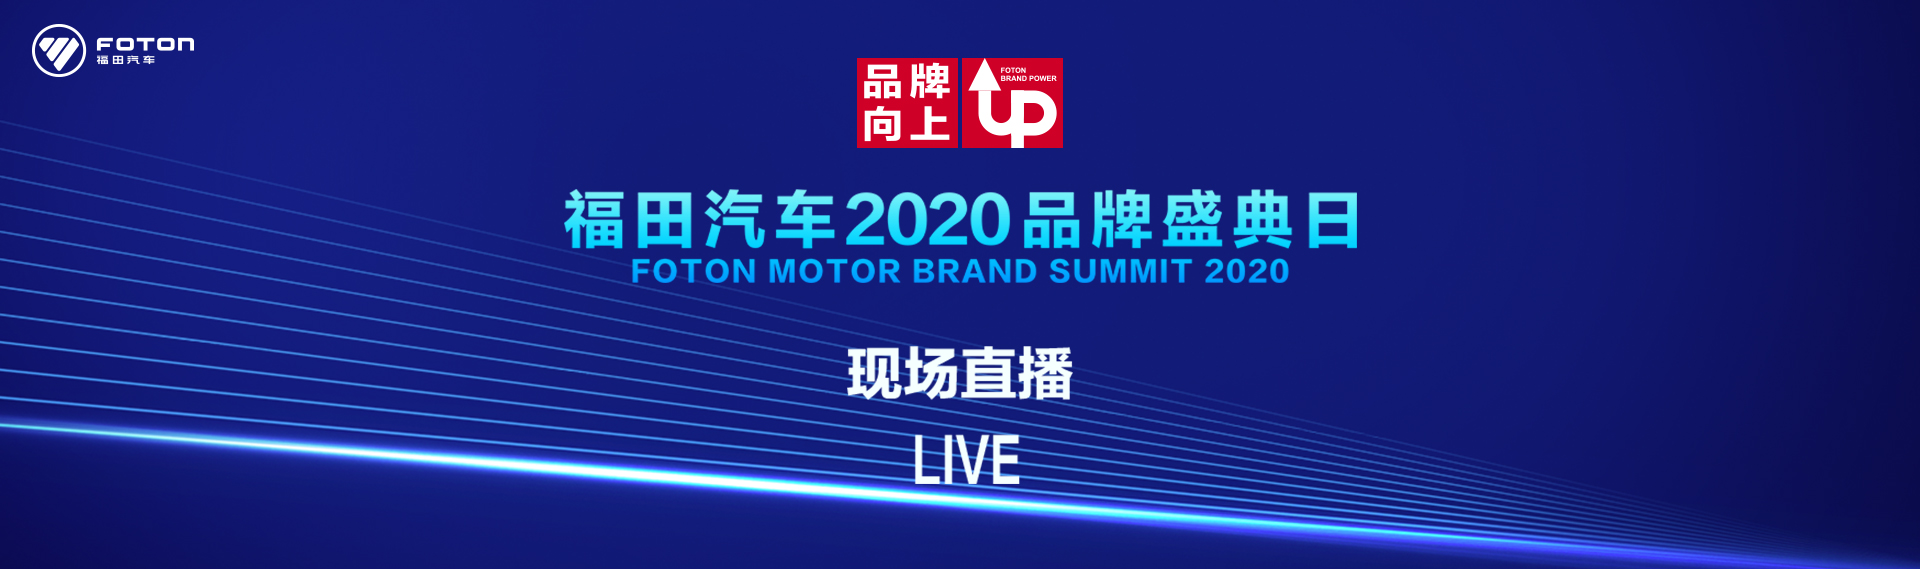 福田汽车2020年品牌盛典日